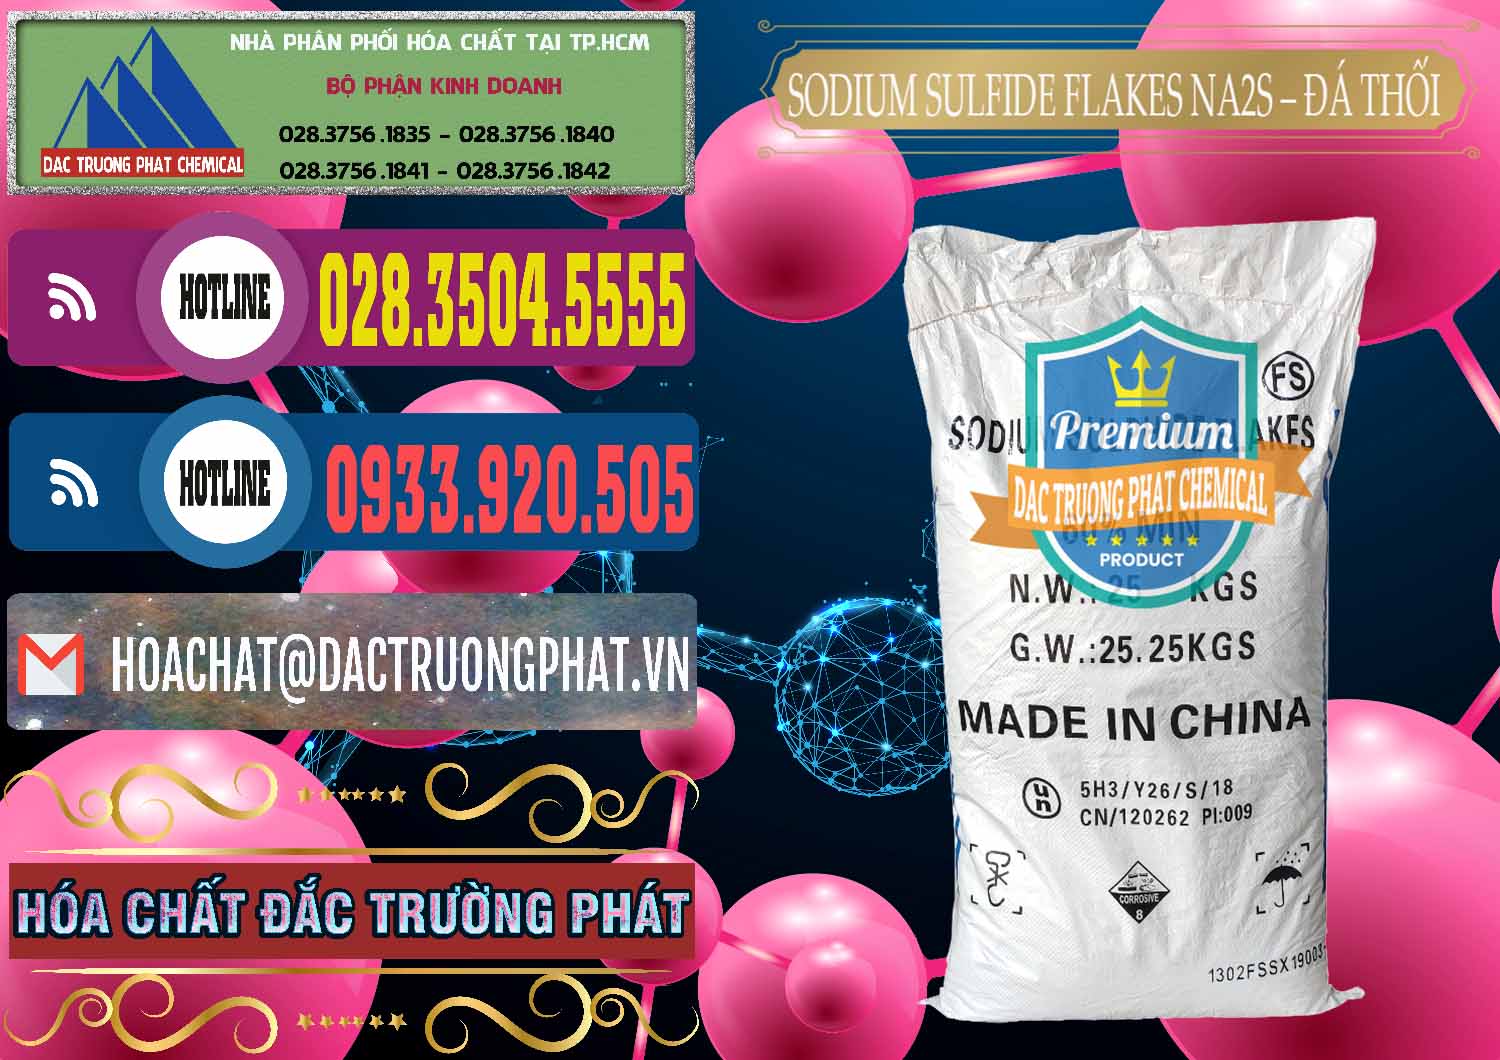 Công ty chuyên cung cấp - bán Sodium Sulfide Flakes NA2S – Đá Thối Đỏ Trung Quốc China - 0150 - Đơn vị kinh doanh & phân phối hóa chất tại TP.HCM - muabanhoachat.com.vn